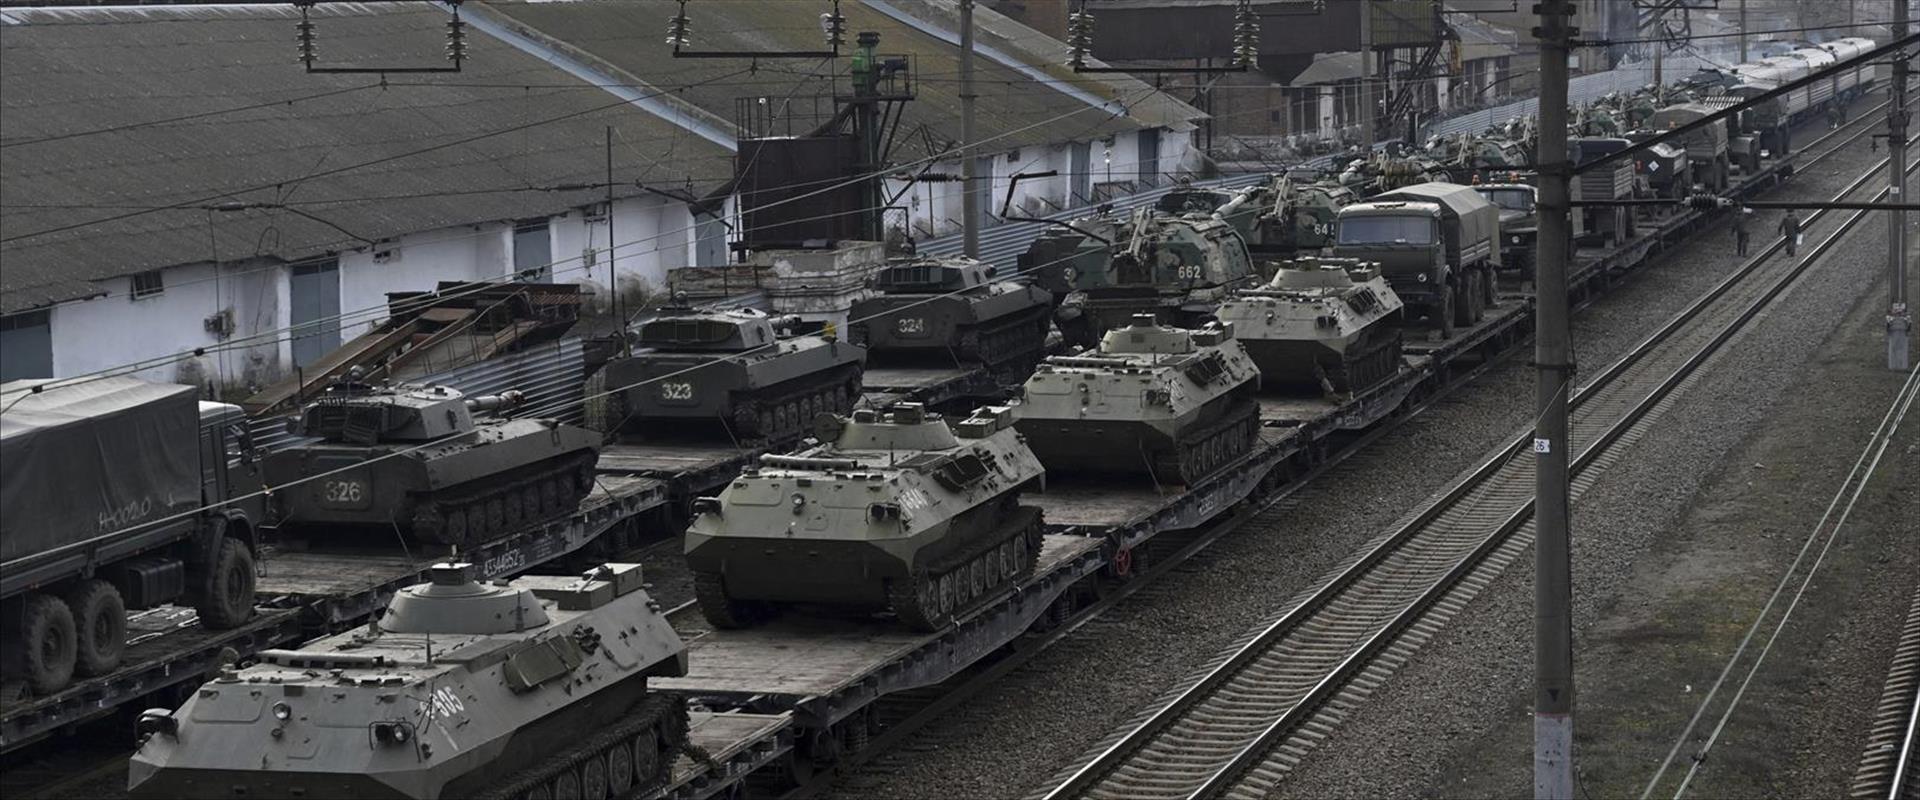 רכבים משוריינים של צבא רוסיה בתנועה בסמוך לגבול